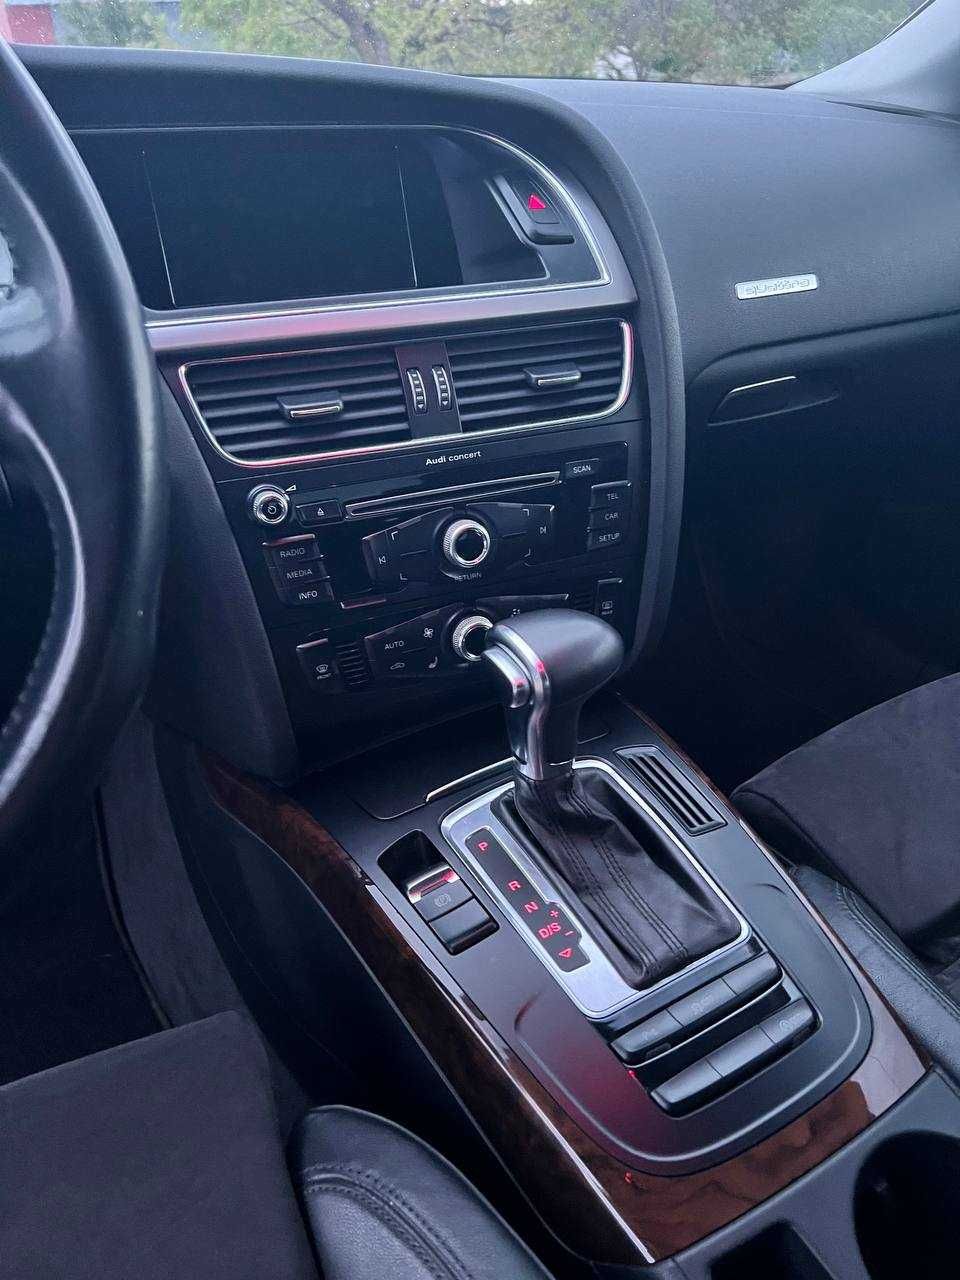 Audi A5 2012 Quattro